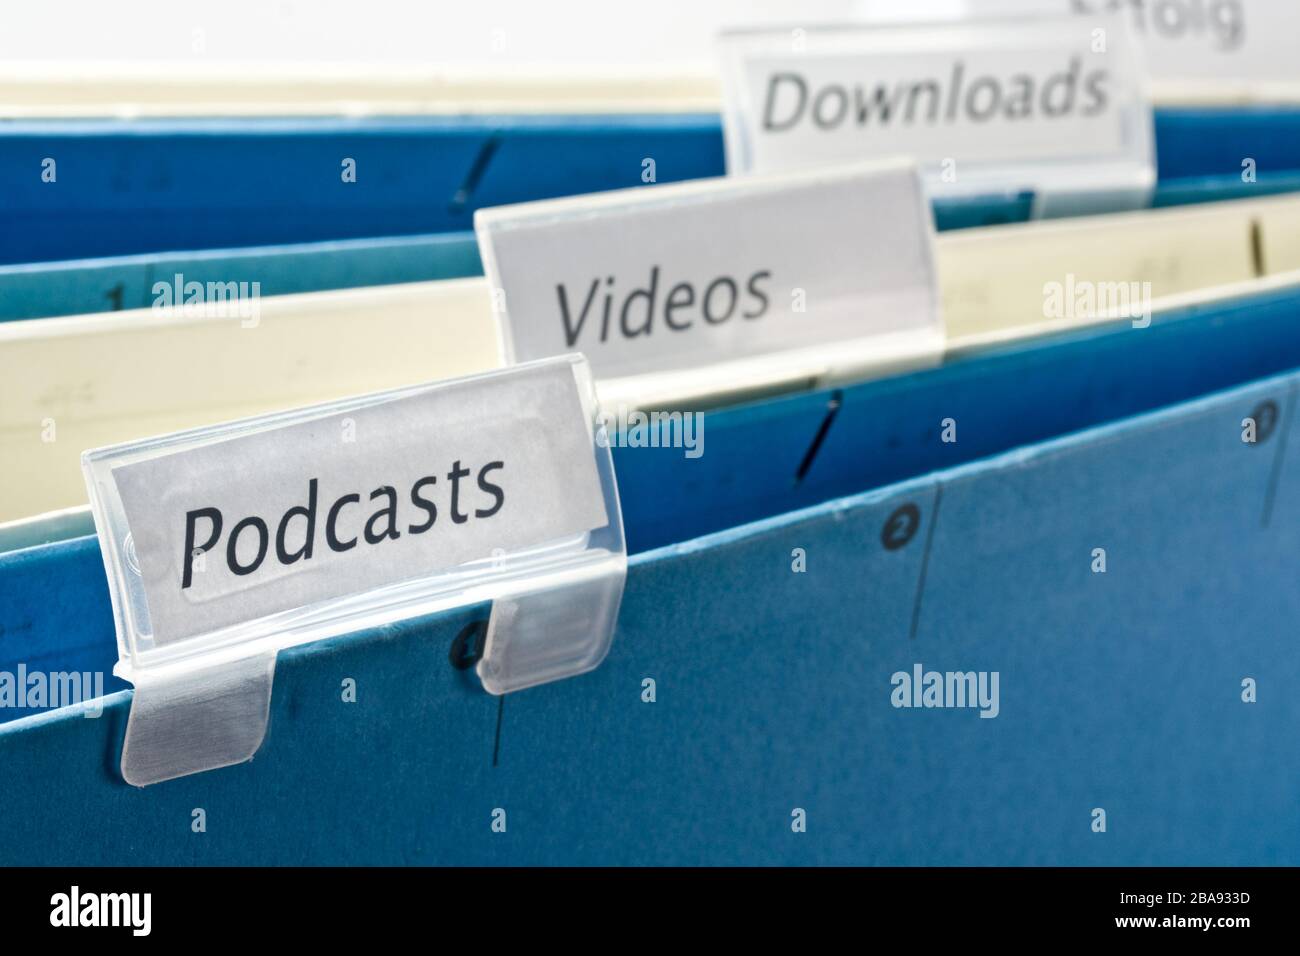 MULTIMEDIA: Podcasts, vídeos, descargas Foto de stock